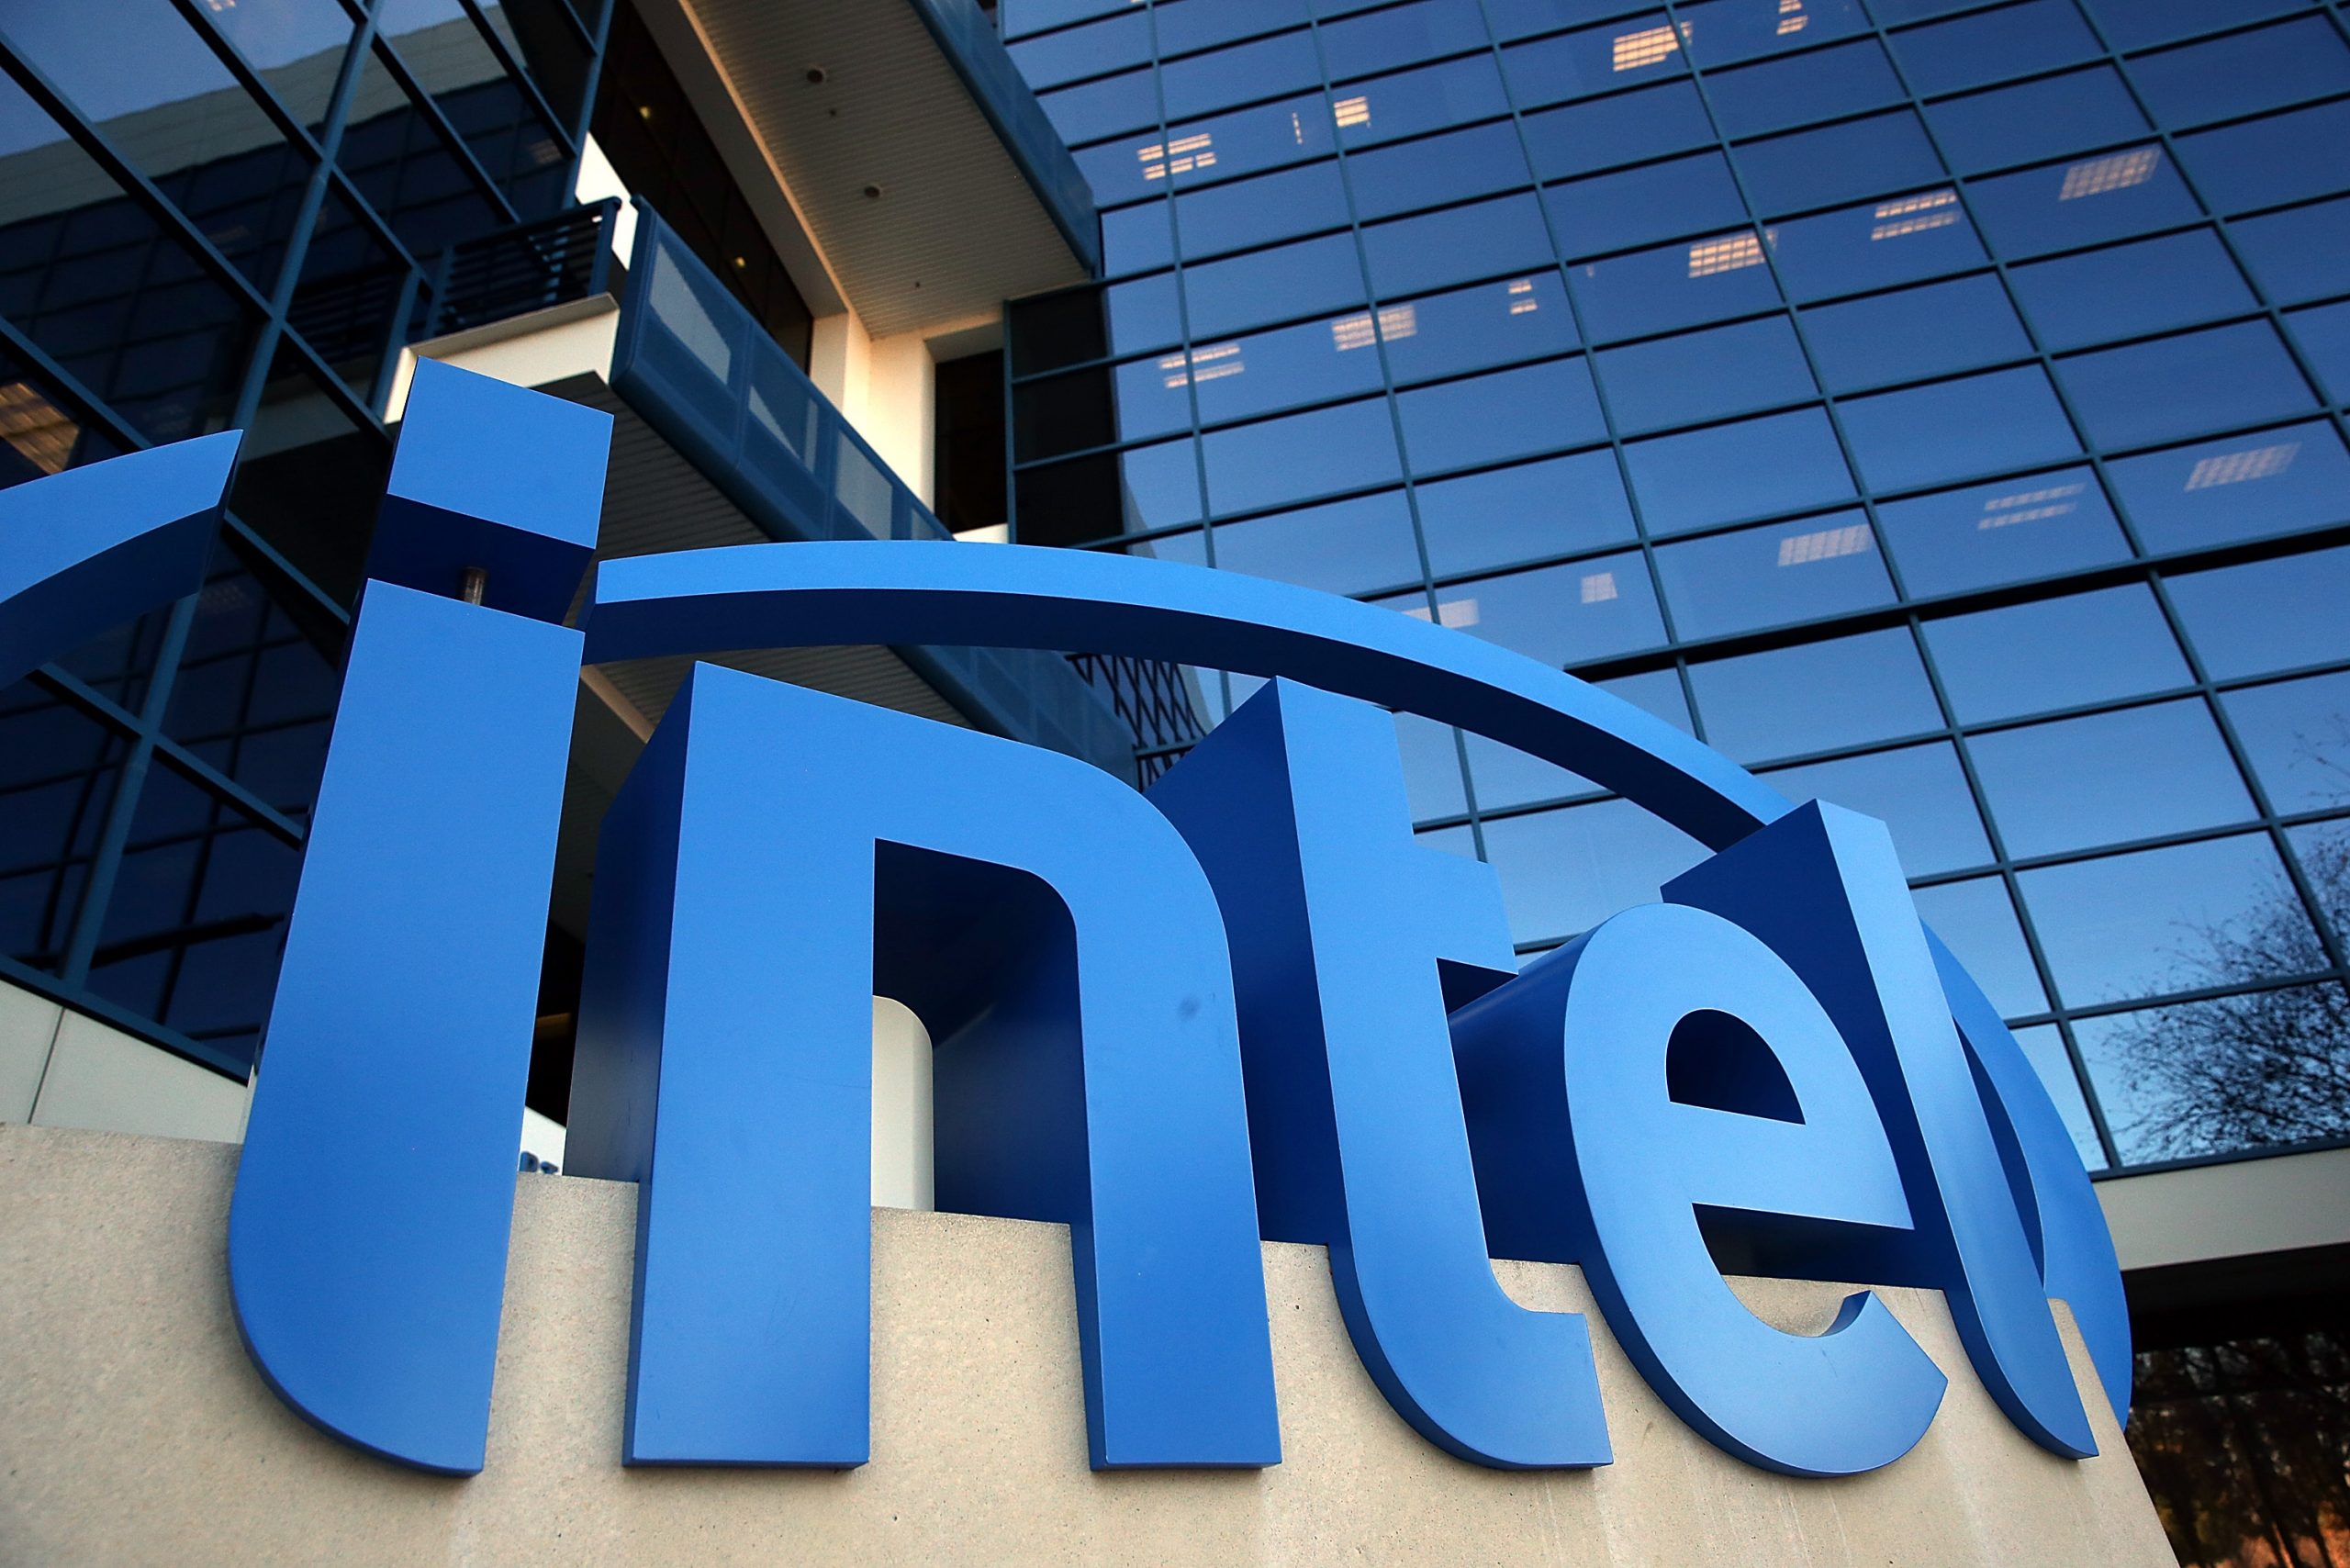 Баг в микрокоде и высокое напряжение: Intel нашли проблему нестабильности процессоров 13 и 14 поколений